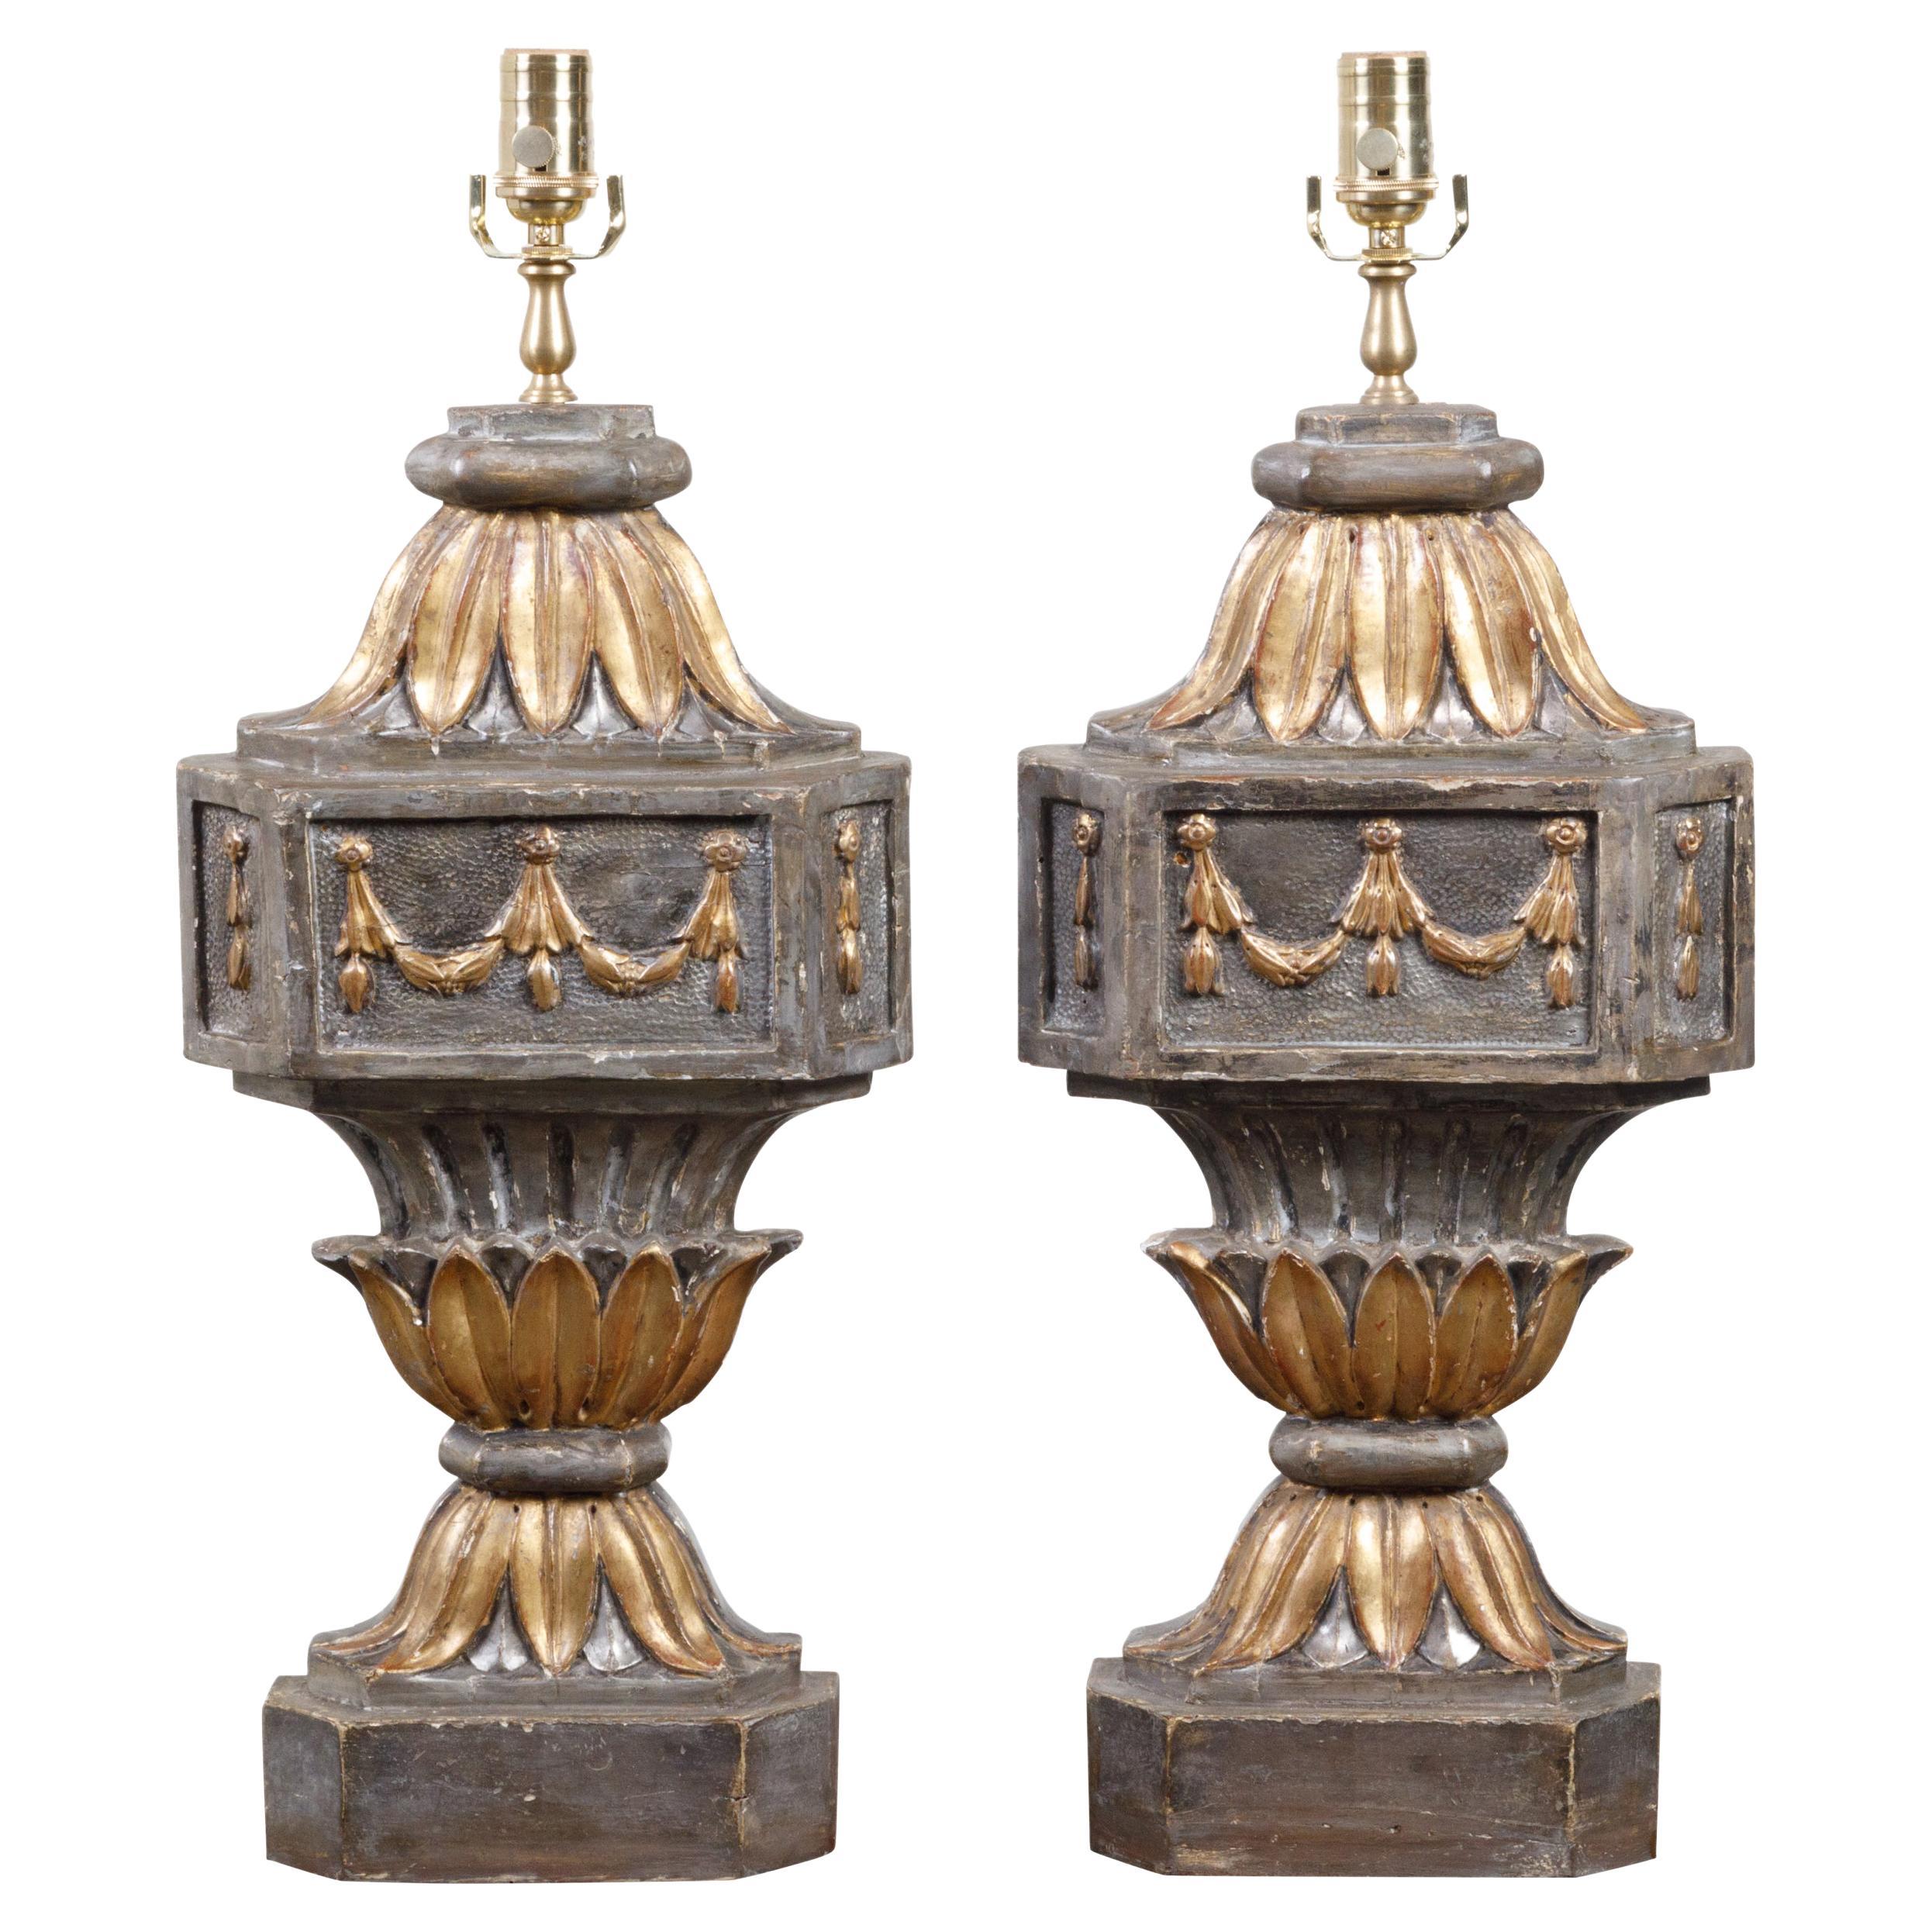 Paar französische geschnitzte und vergoldete Fragmente aus dem 18. Jahrhundert, die zu Tischlampen verarbeitet wurden